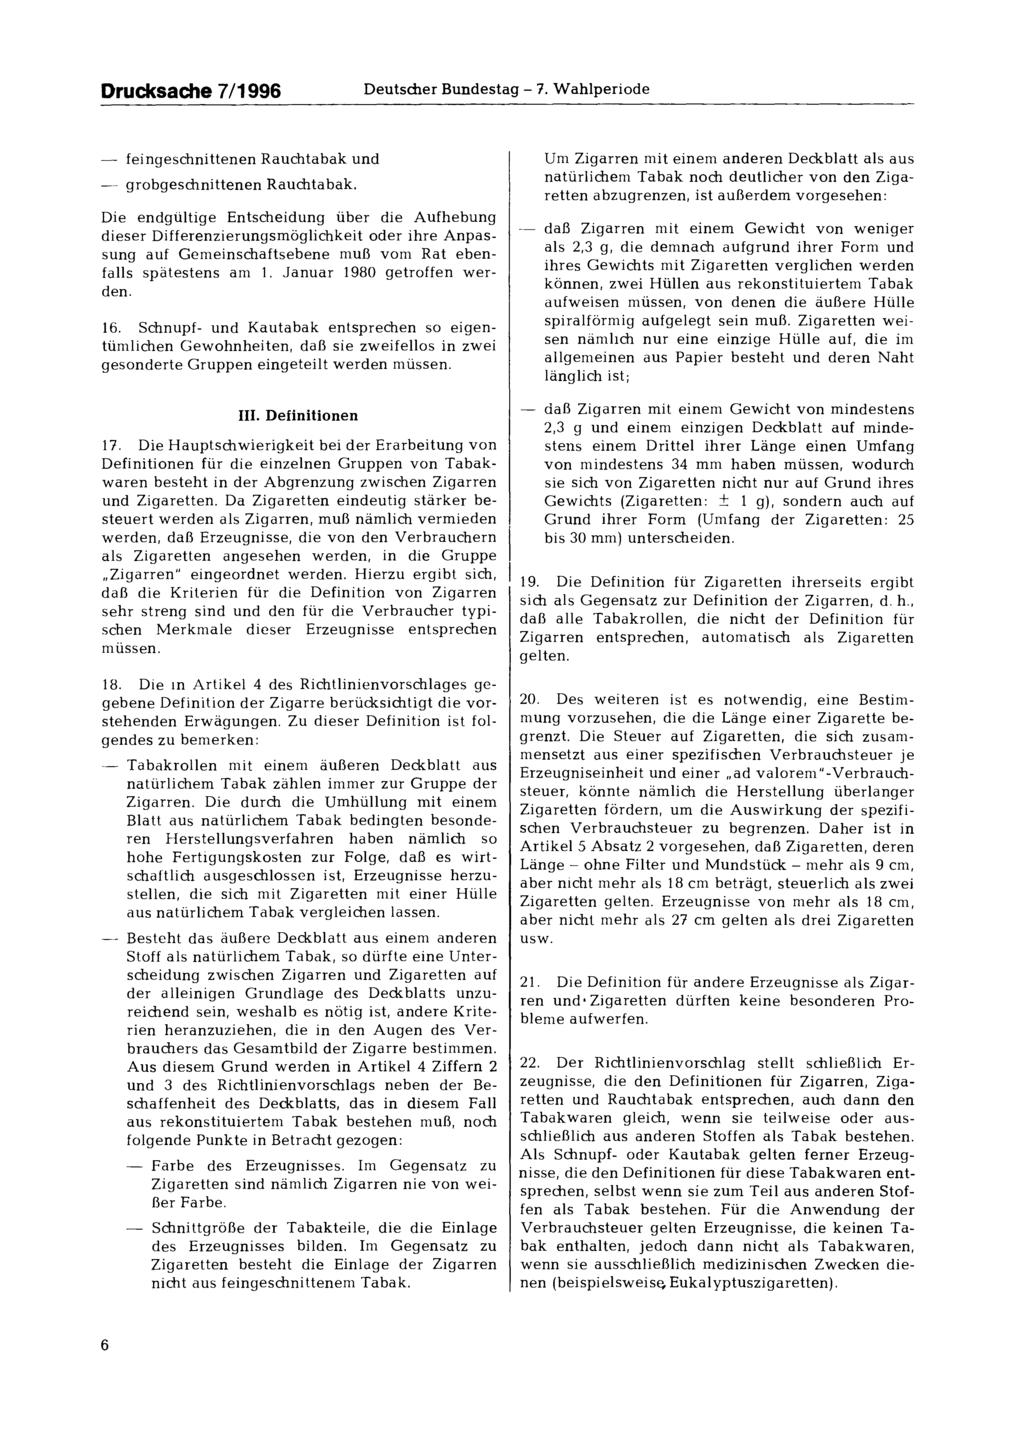 Drucksache 7/1996 Deutscher Bundestag 7. Wahlperiode feingeschnittenen Rauchtabak und grobgeschnittenen Rauchtabak.